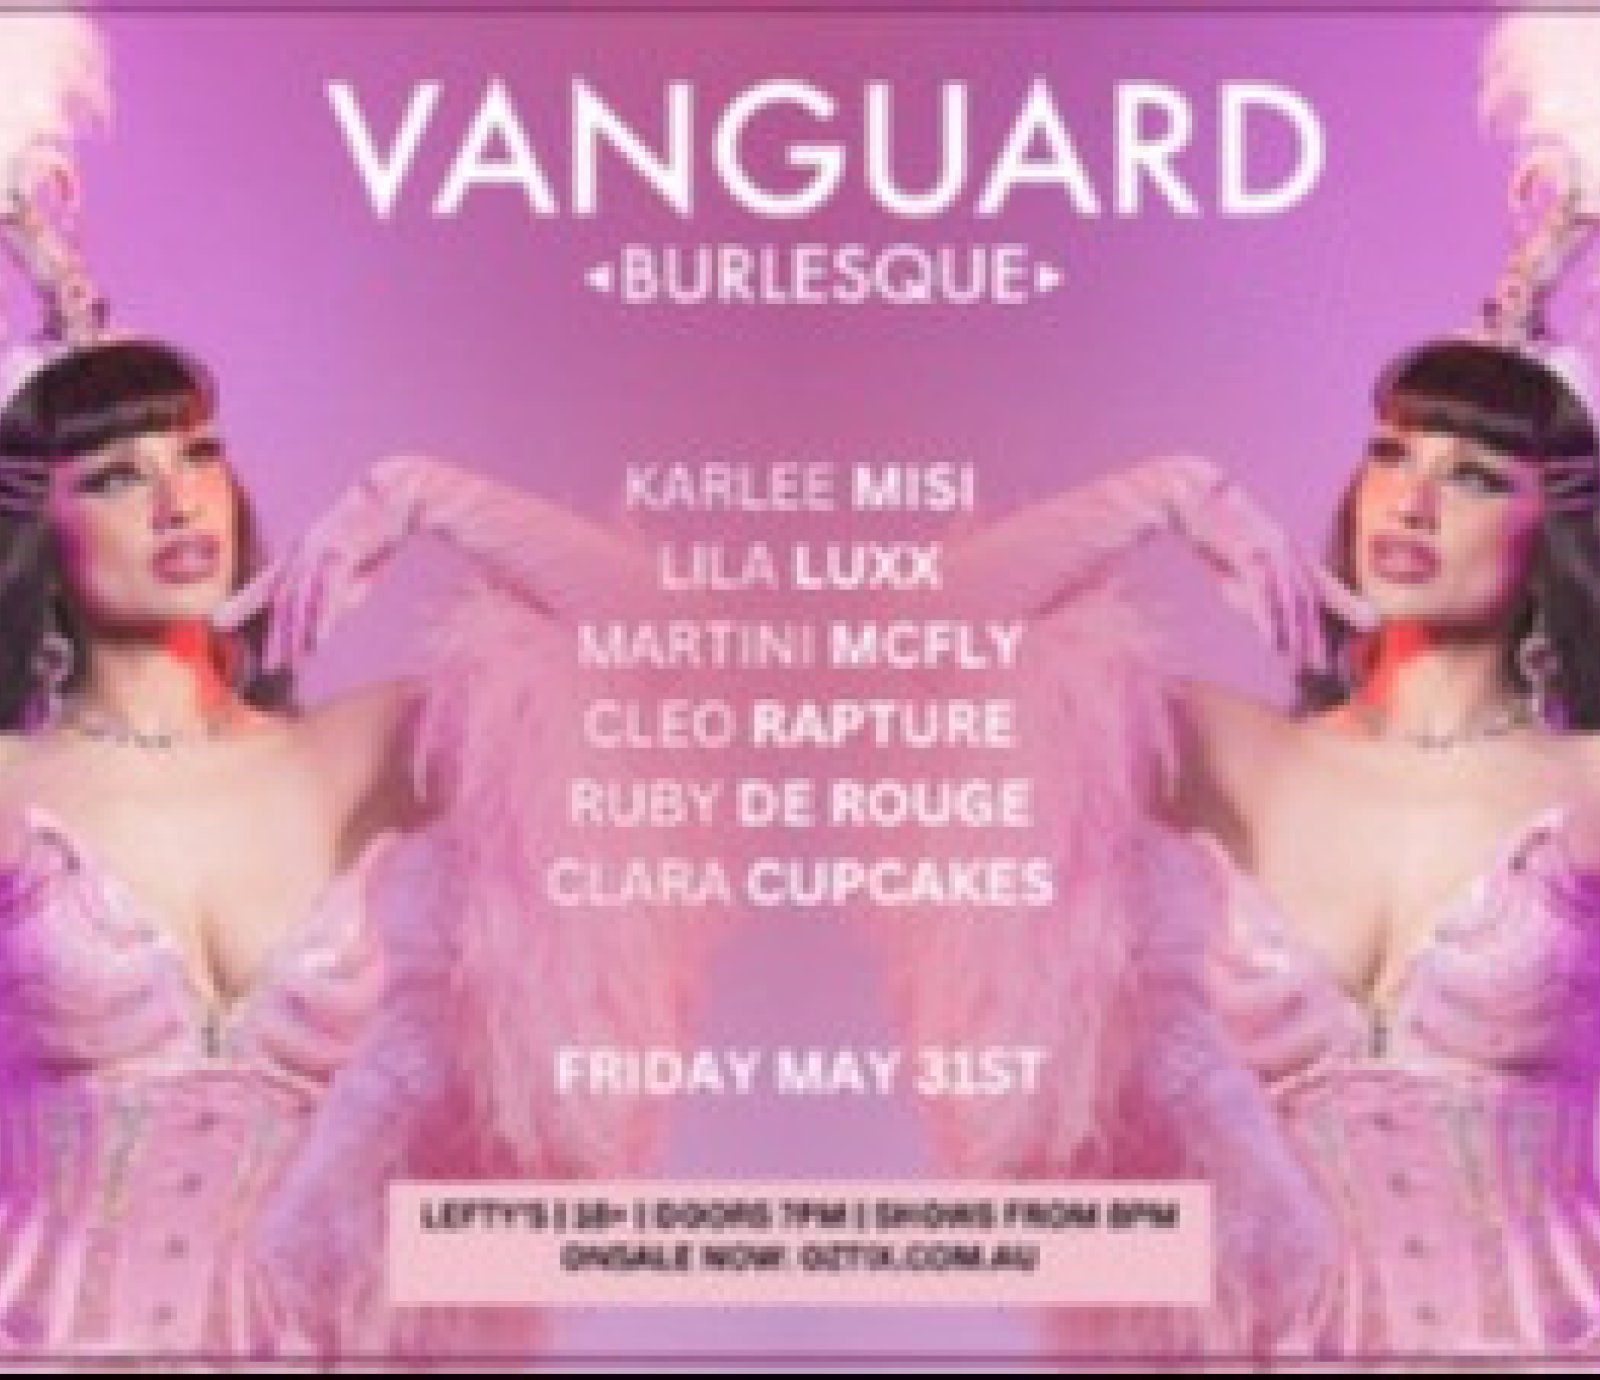 Vanguard Burlesque